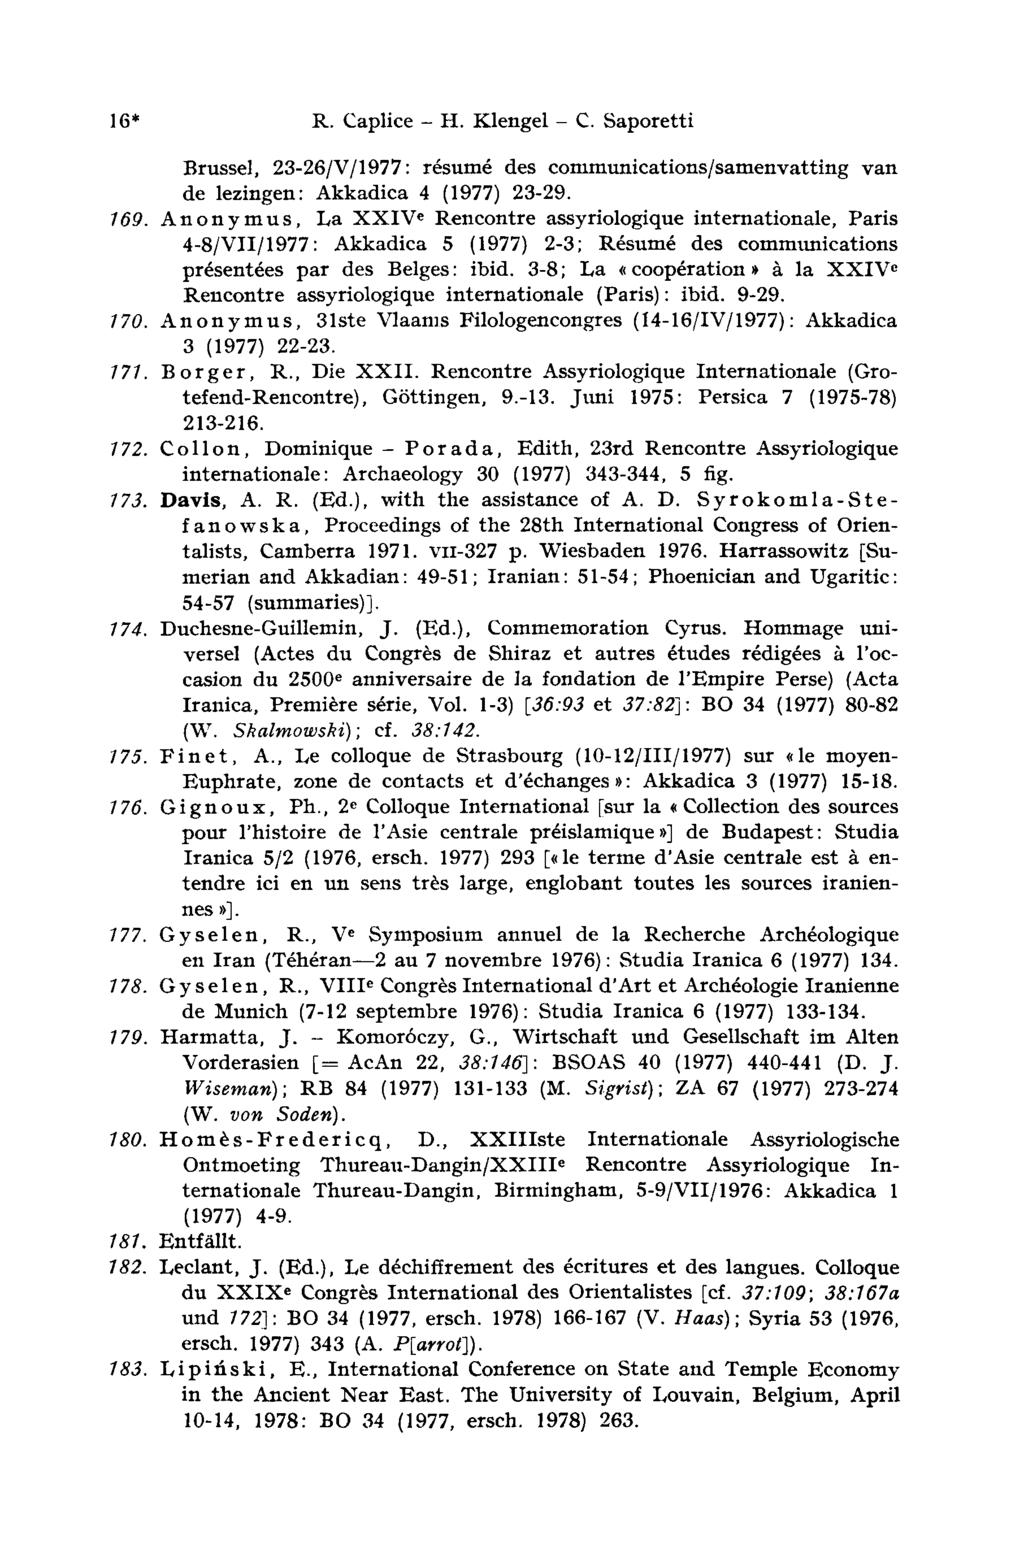 16* R. Caplice - H. Klengel - С. Saporetti Brüssel, 23-26/V/1977: résumé des communications/samenvatting van de lezingen: Akkadica 4 (1977) 23-29. 169.